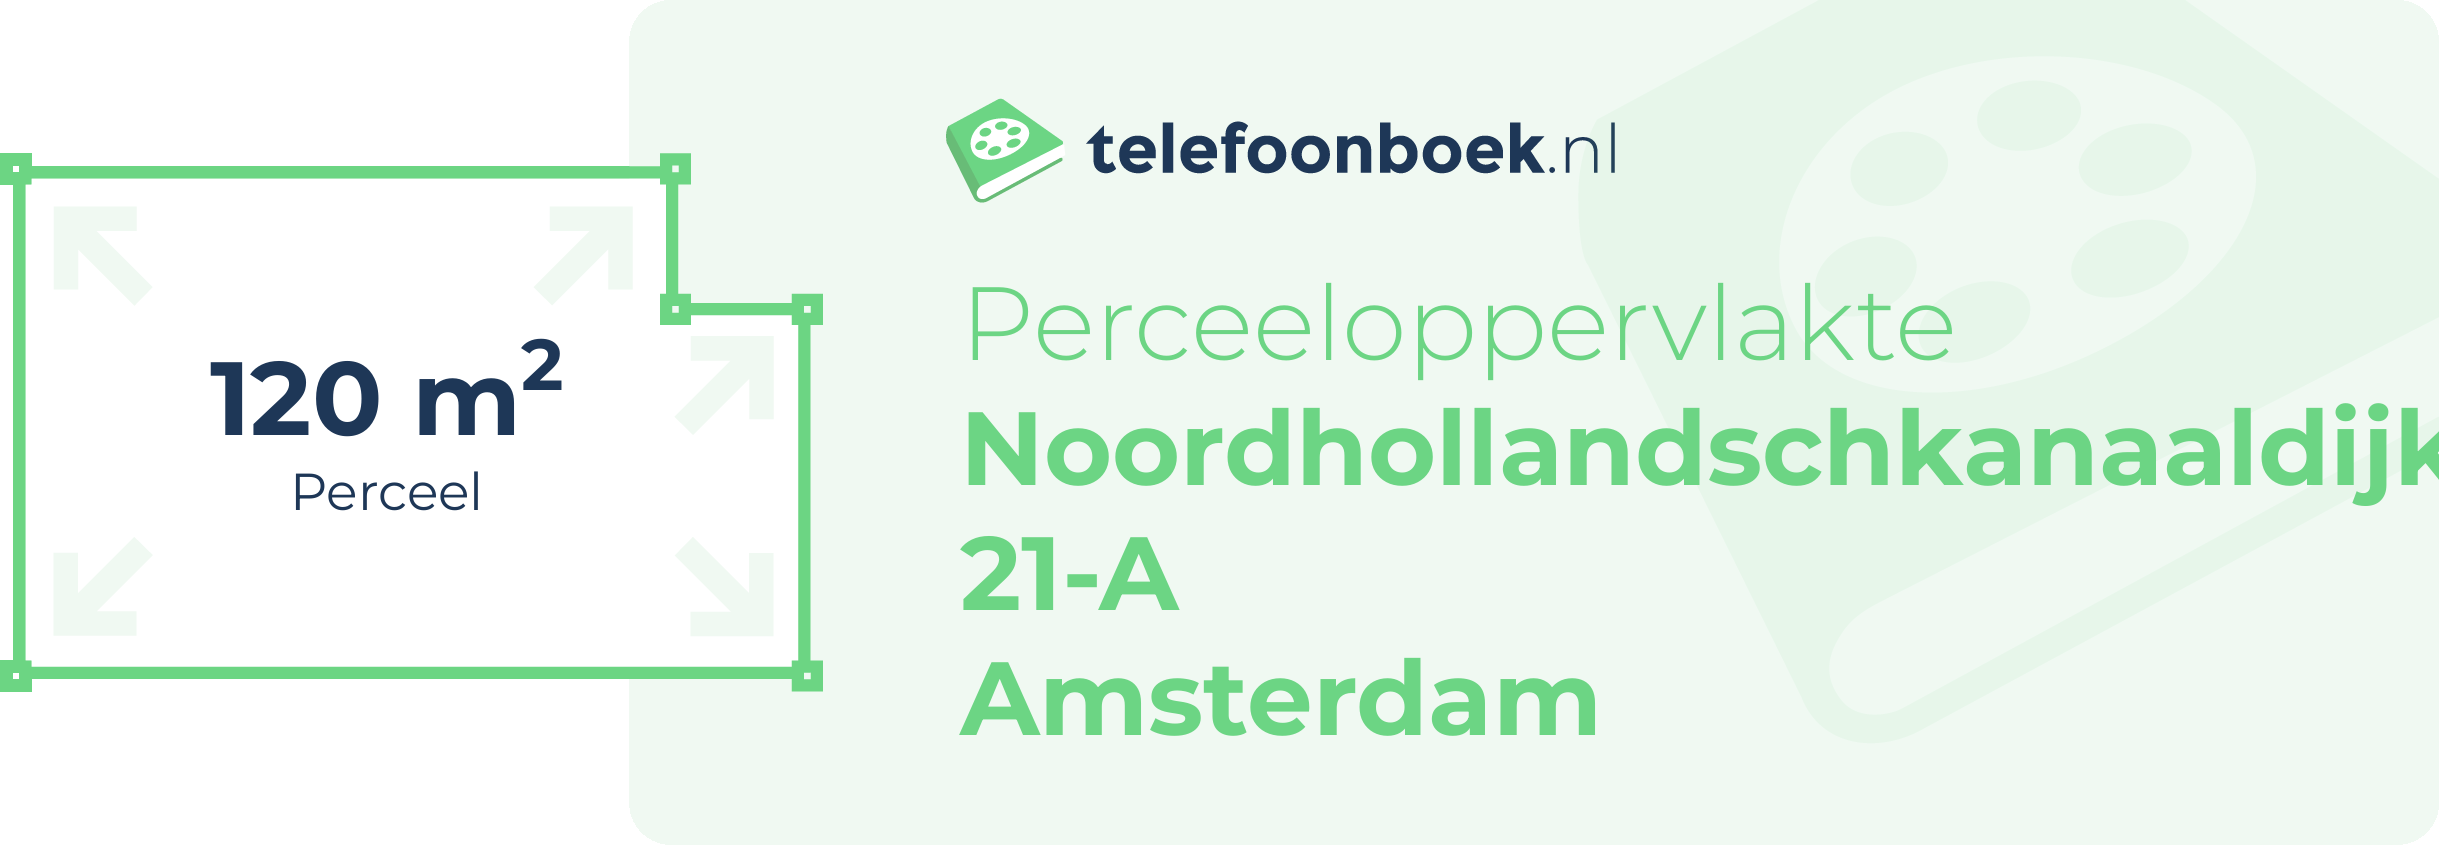 Perceeloppervlakte Noordhollandschkanaaldijk 21-A Amsterdam